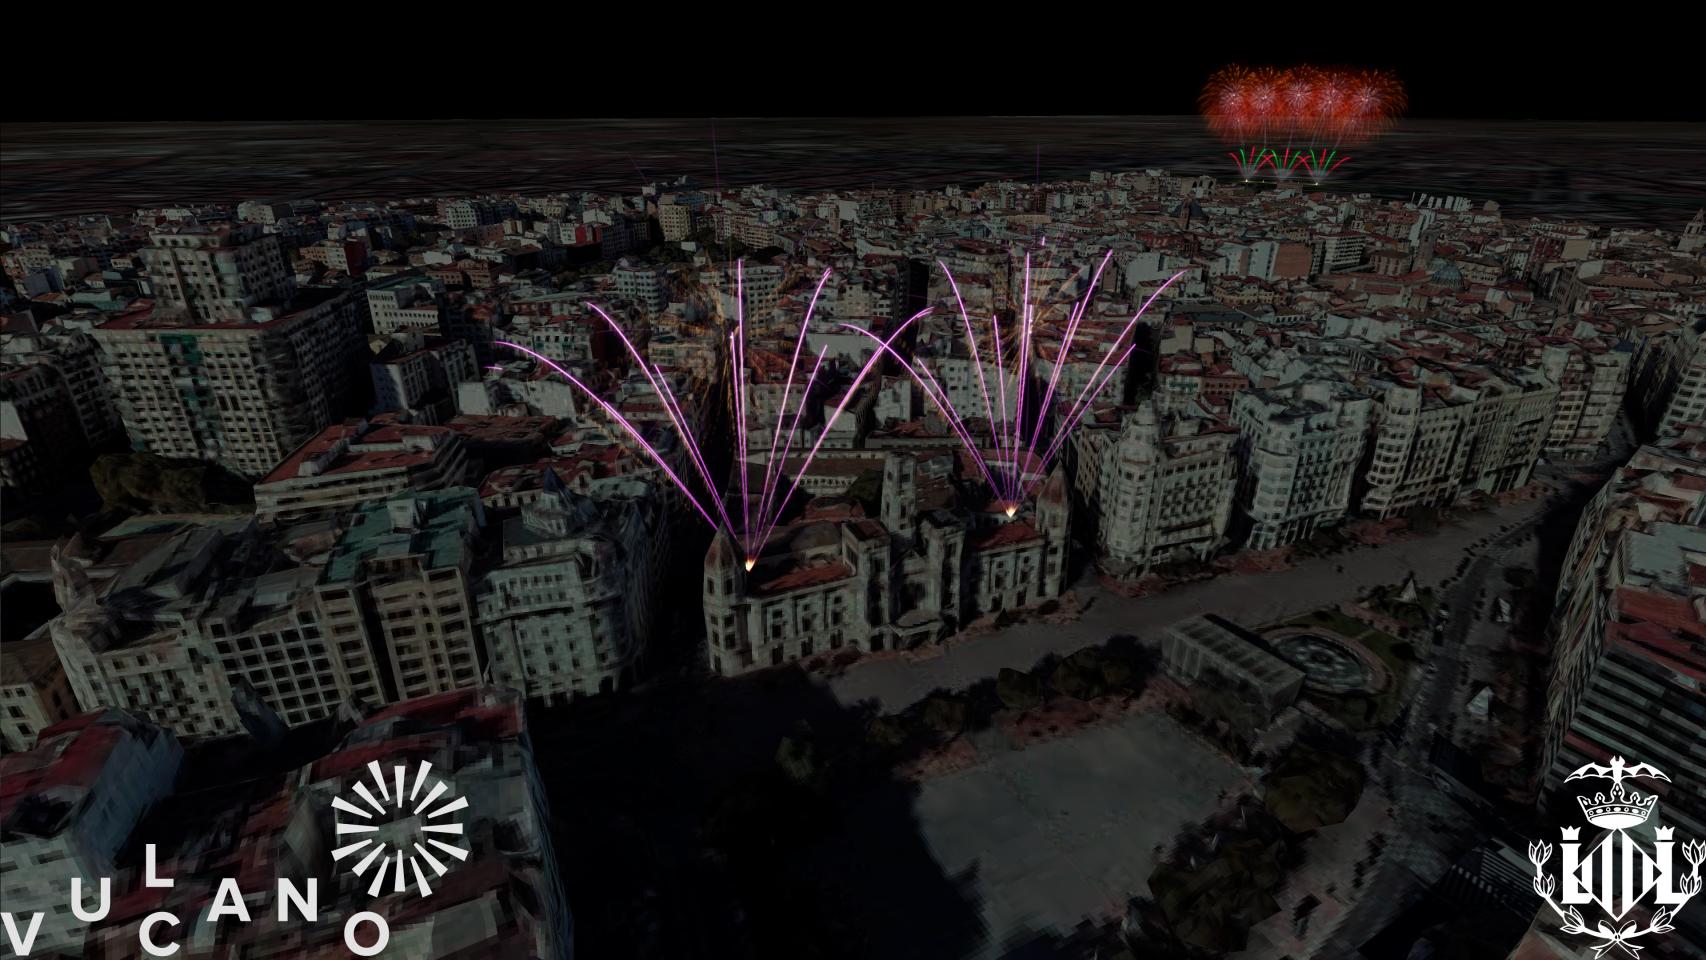 Muestra del disparo simultáneo de los cuatro castillos artificiales en el cielo de Valencia, en Nochevieja. EE